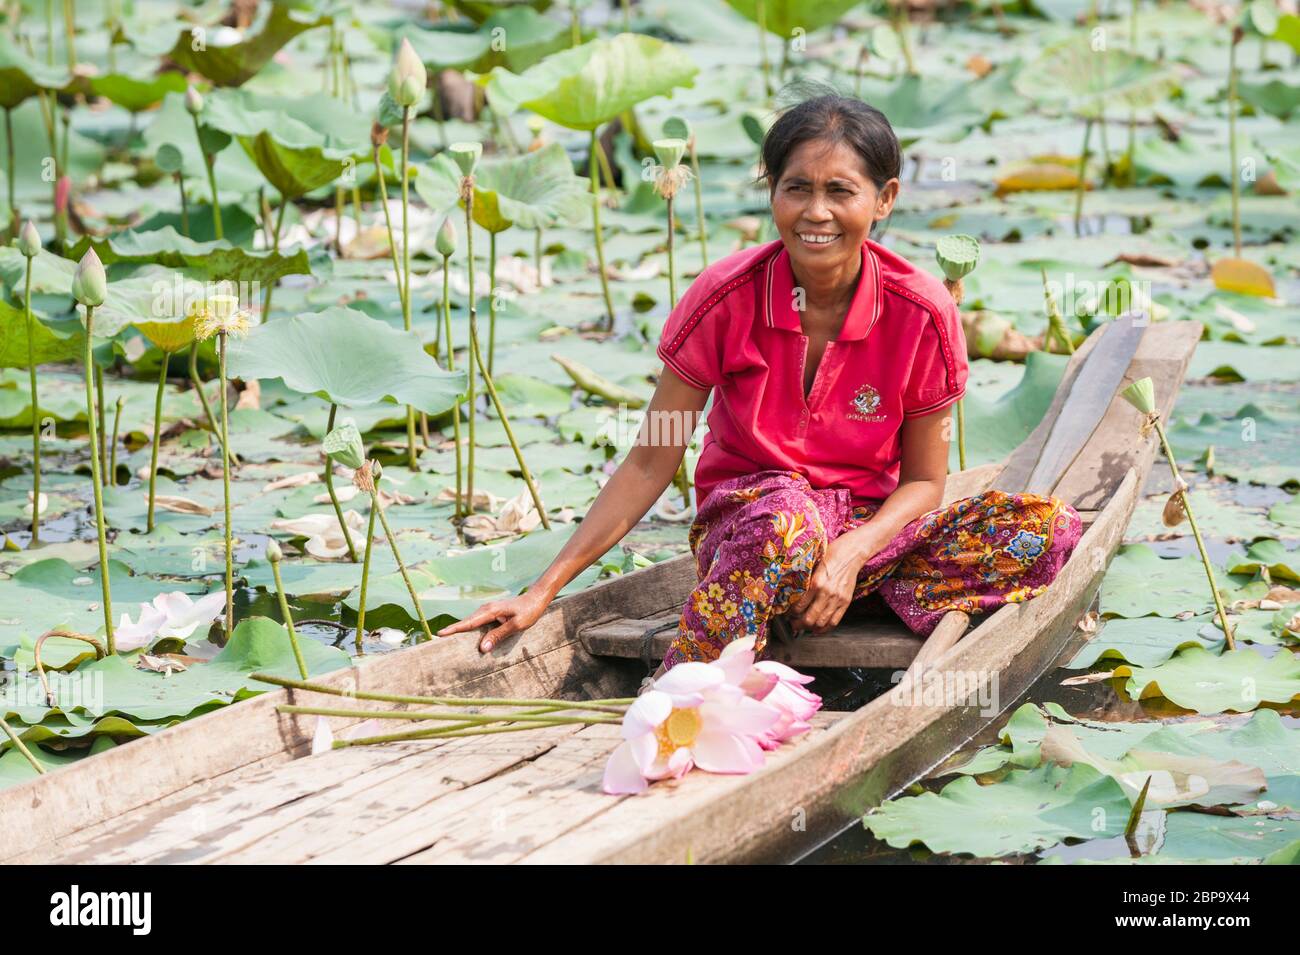 Femme cambodgienne sur un bateau fluvial récoltant des fleurs de lotus, Cambodge central, Asie du Sud-est Banque D'Images